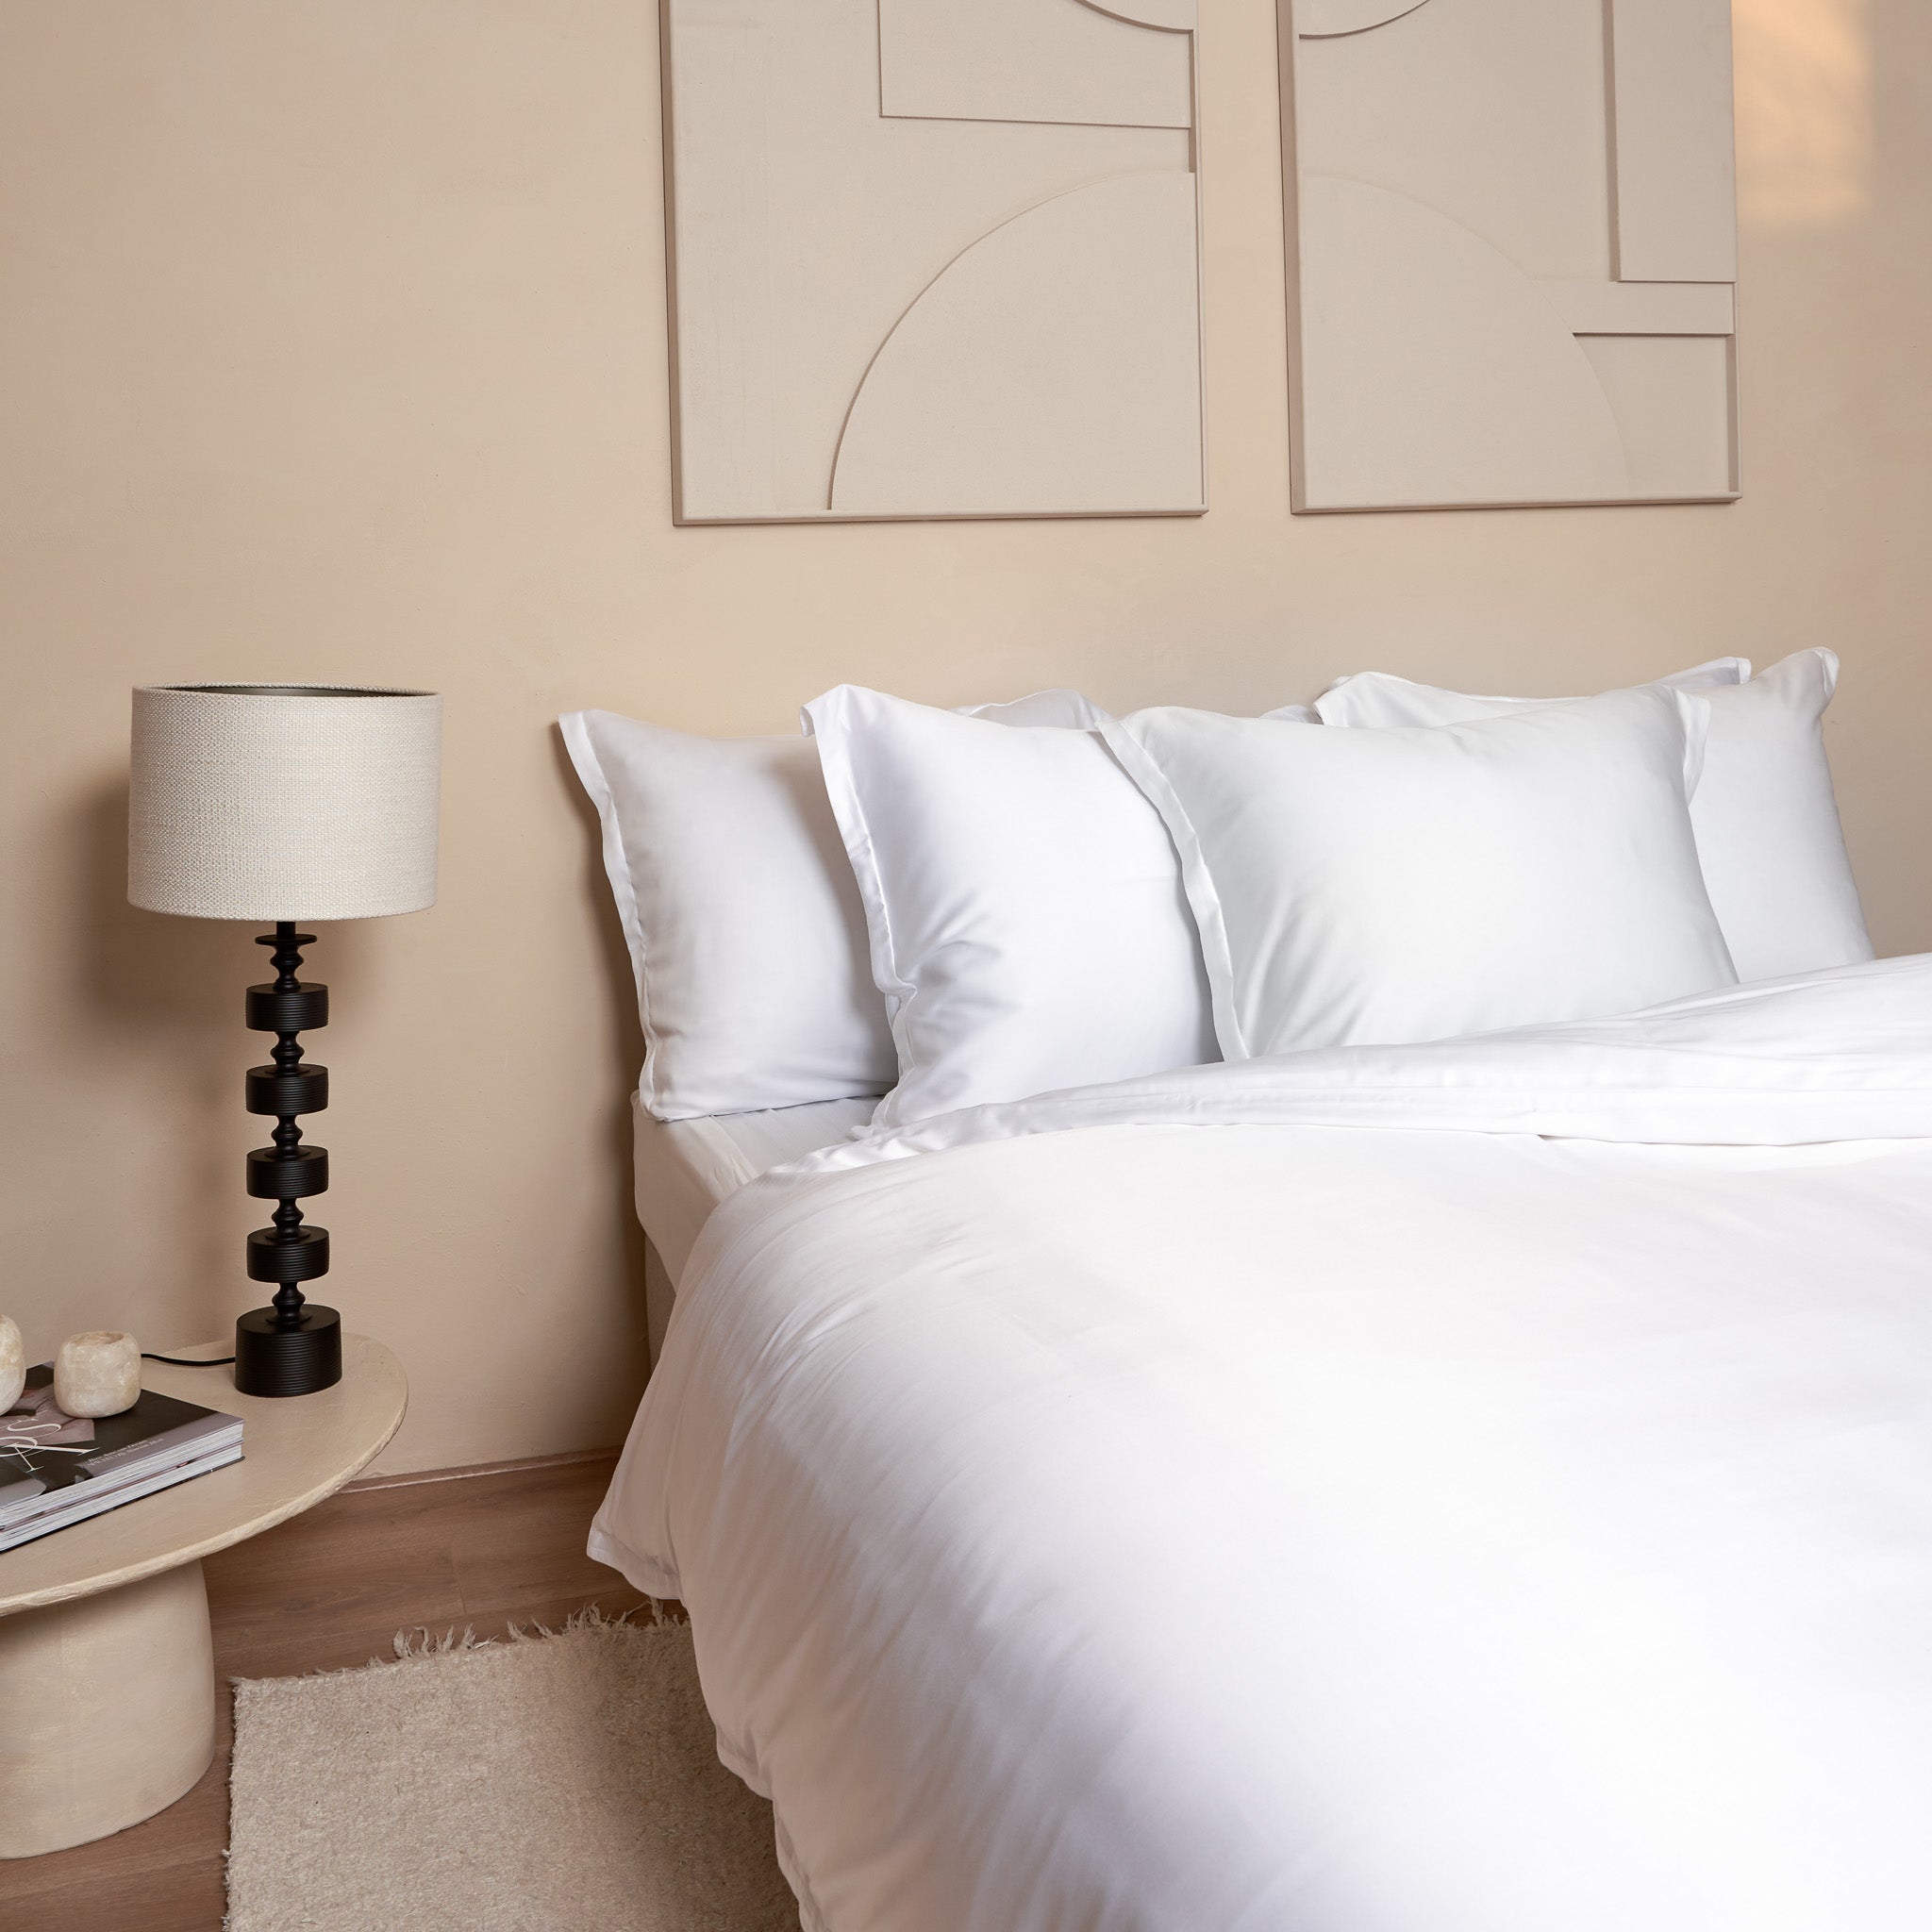 Mooie slaapkamer met opgemaakt bed met kussenslopen, dekbedovertrek en hoeslaken gemaakt van de stof Tencel